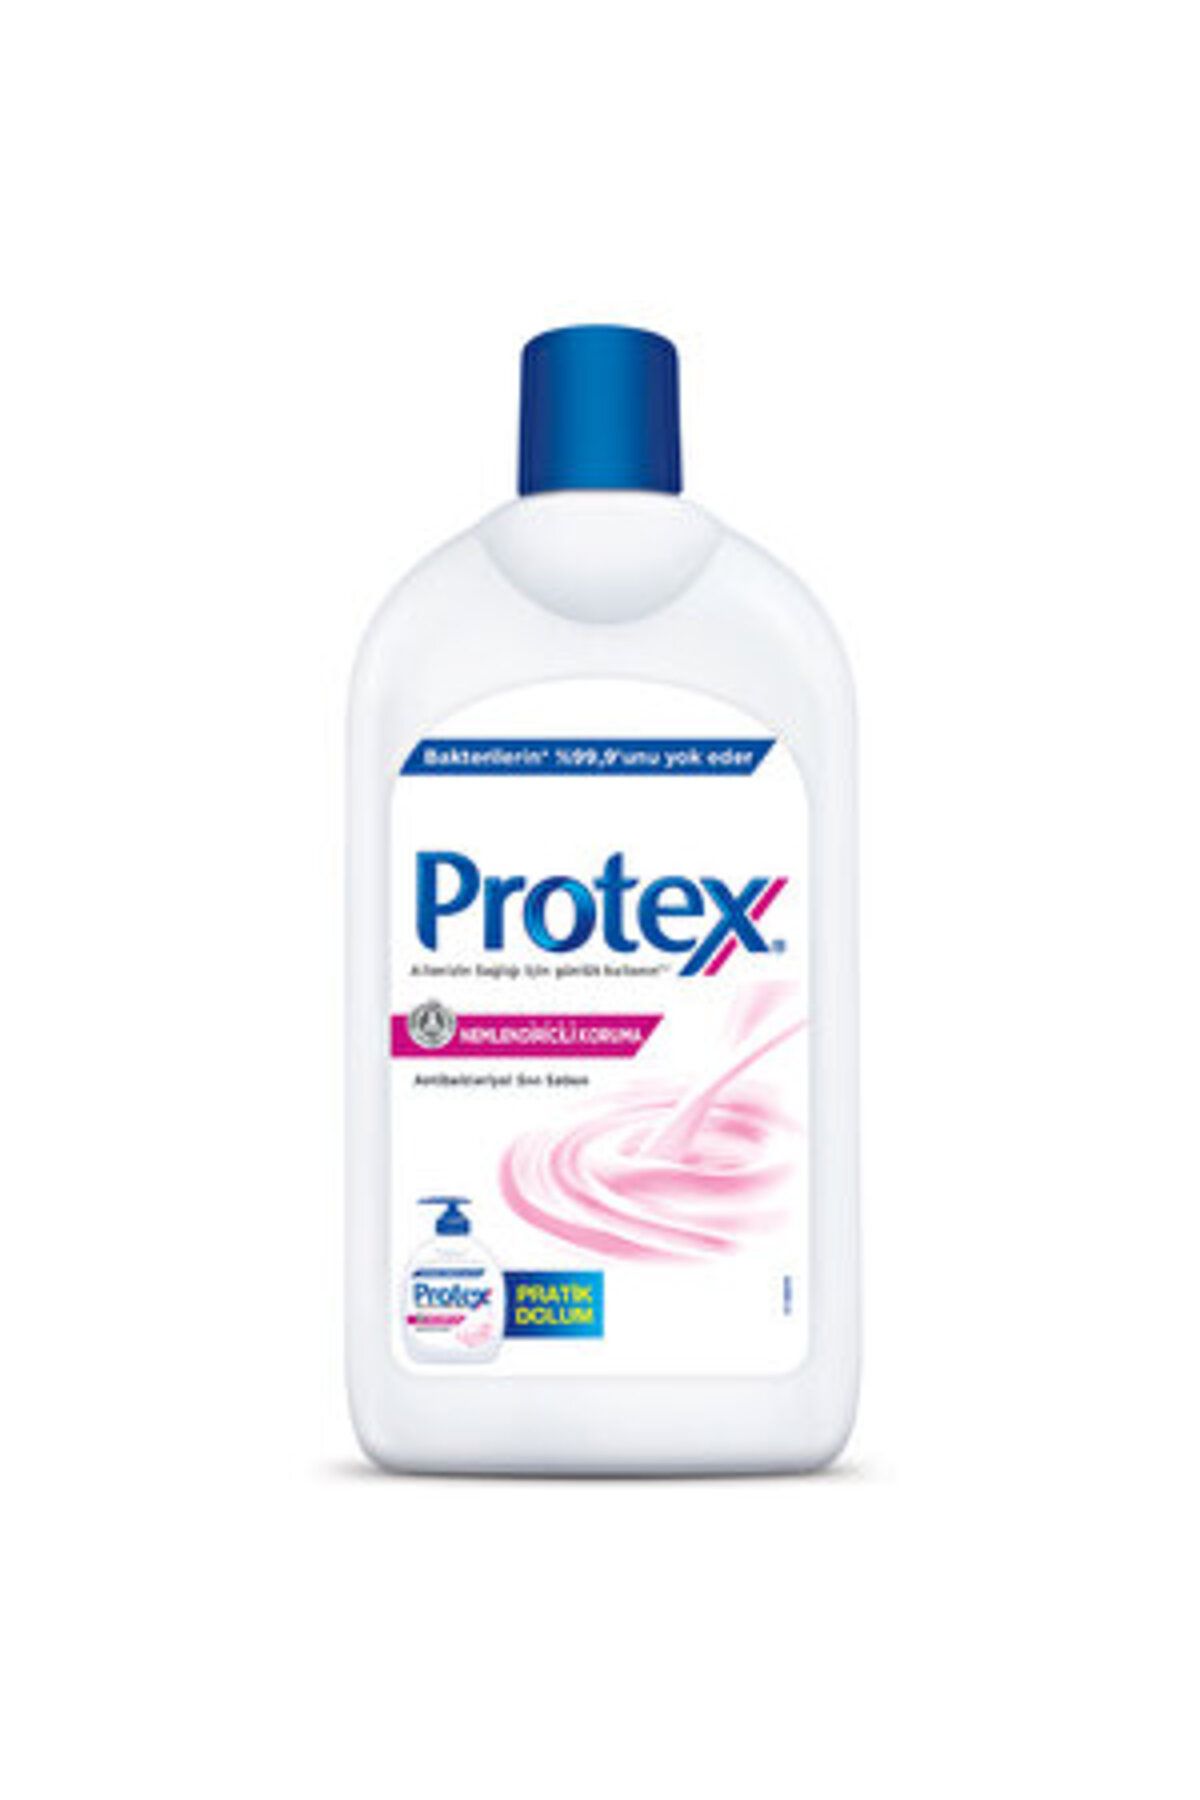 Protex (3 ADET ) Protex Nemlendiricili Sıvı Sabun 700 ml